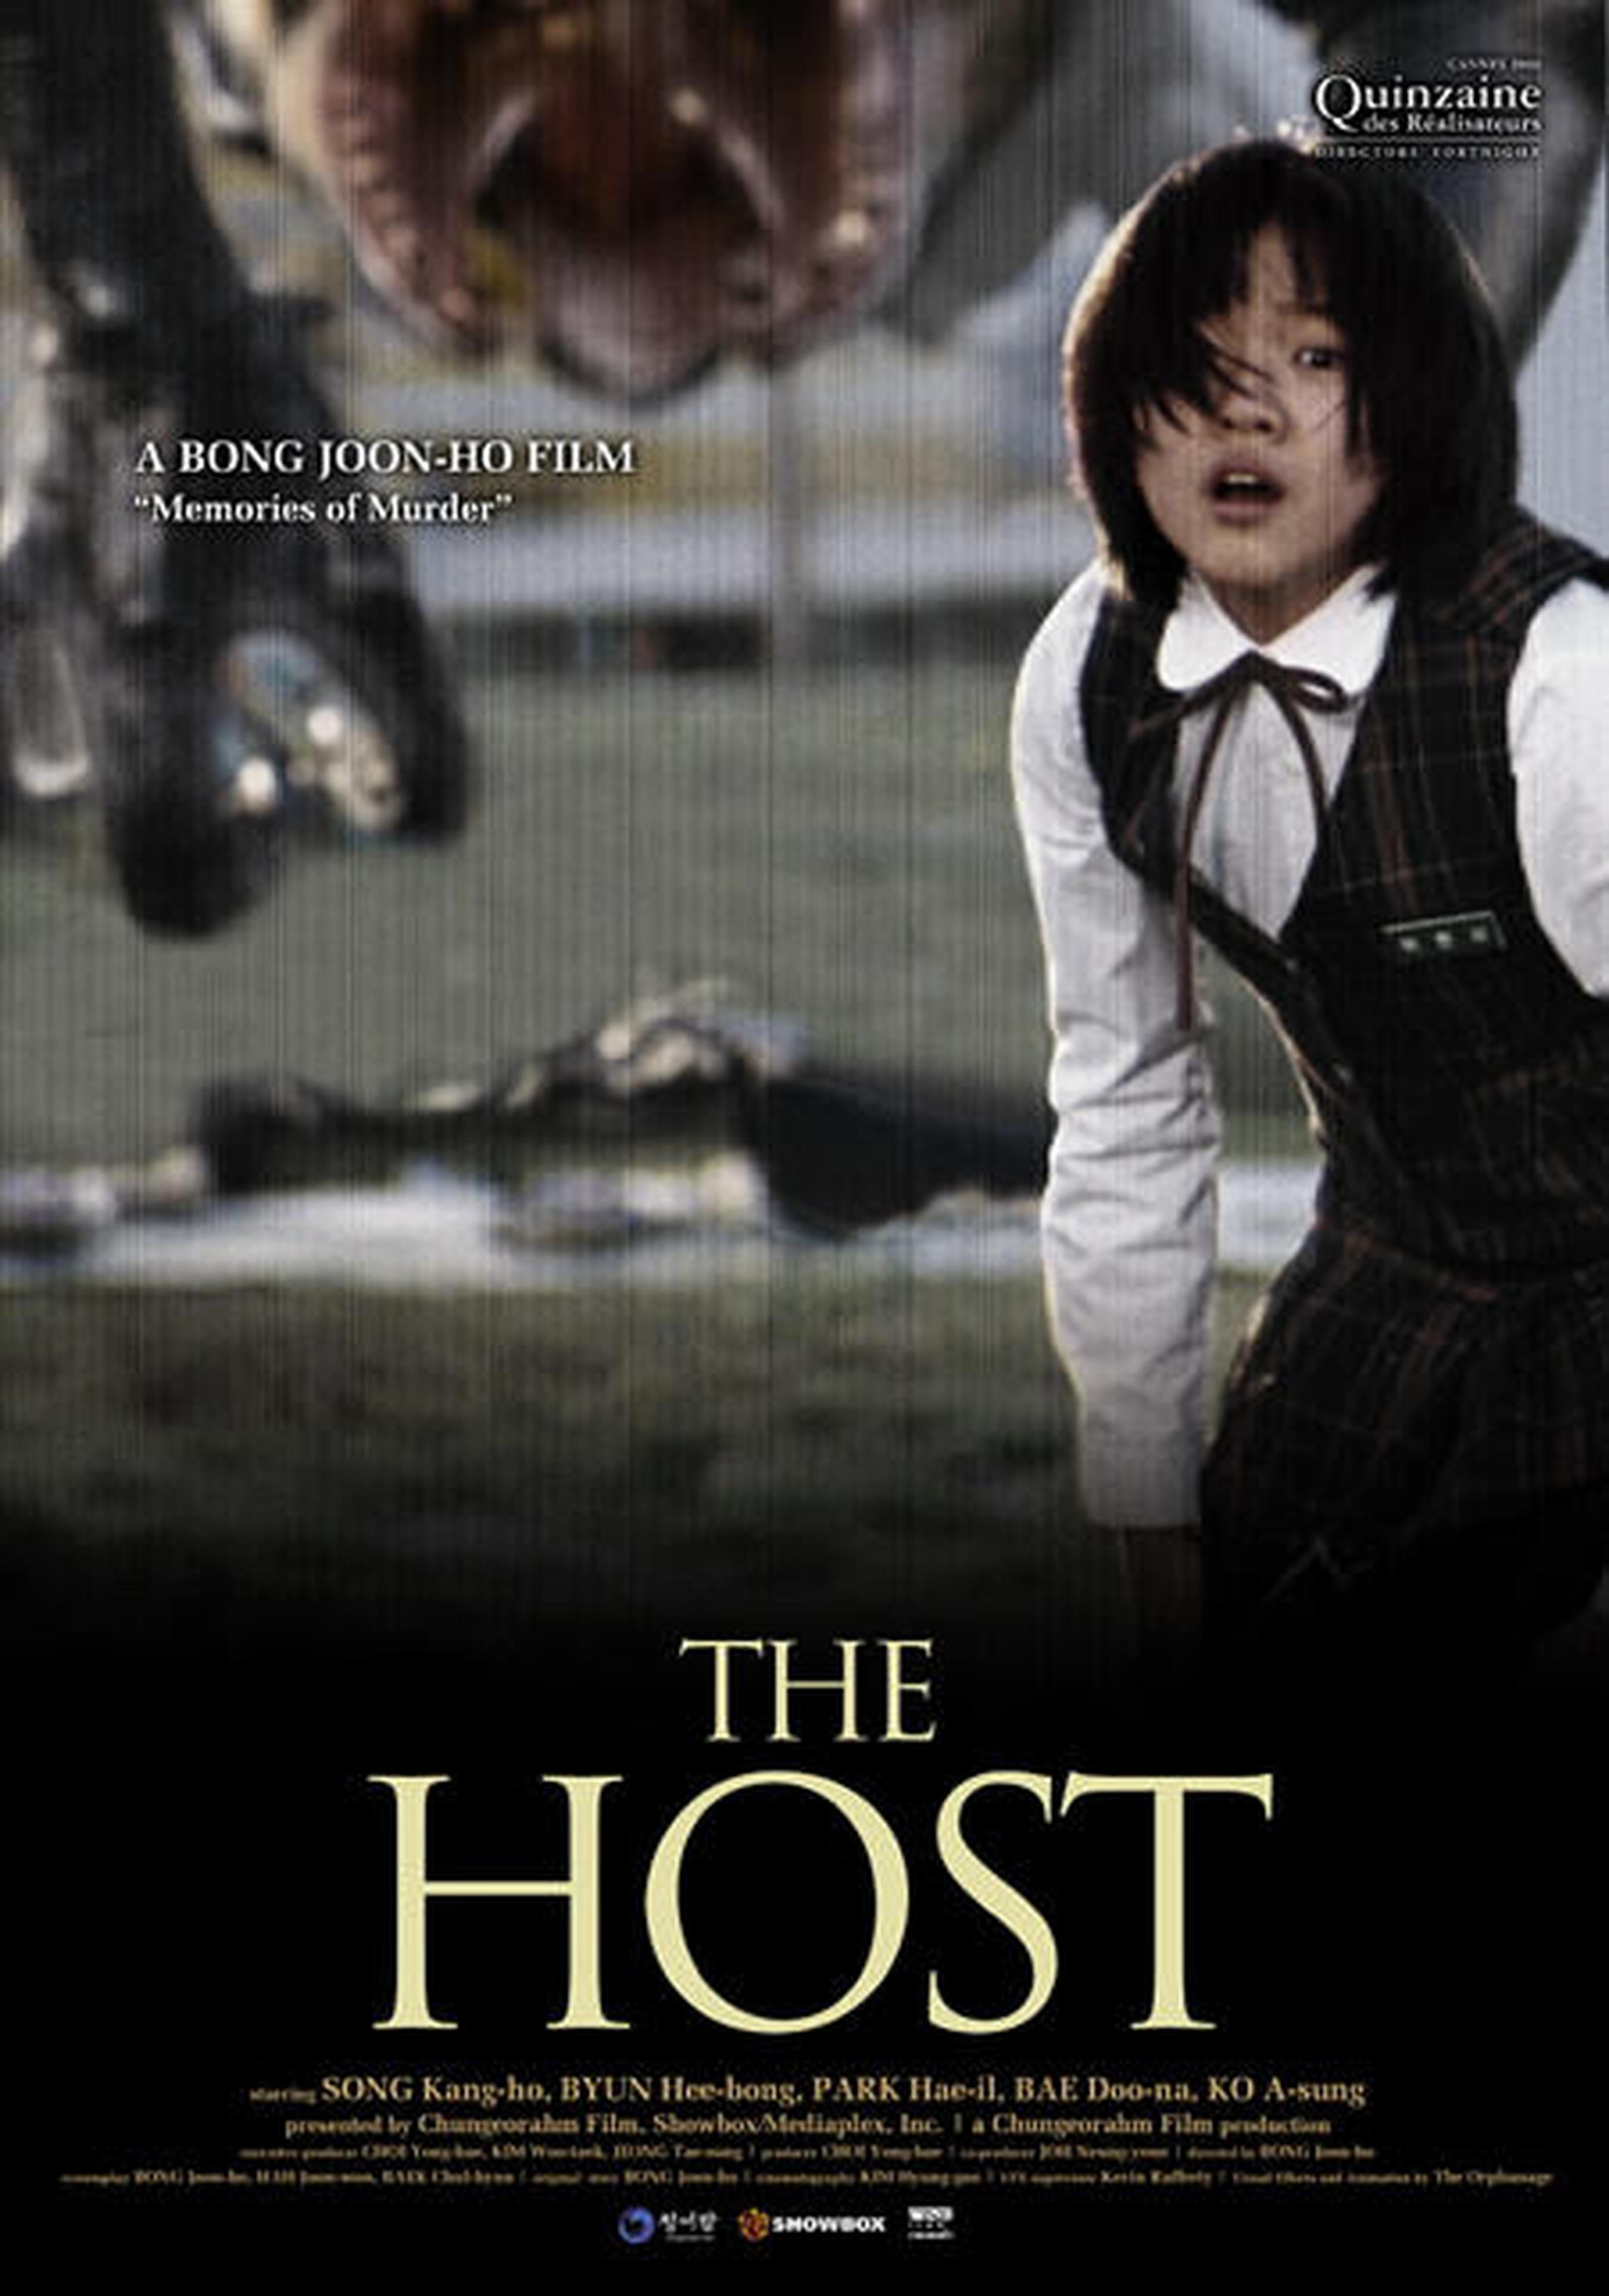 【2000-2010】《汉江怪物》 (2006)导演奉俊昊。动员1301万观影人次，目前位列韩国历年票房榜第八位。